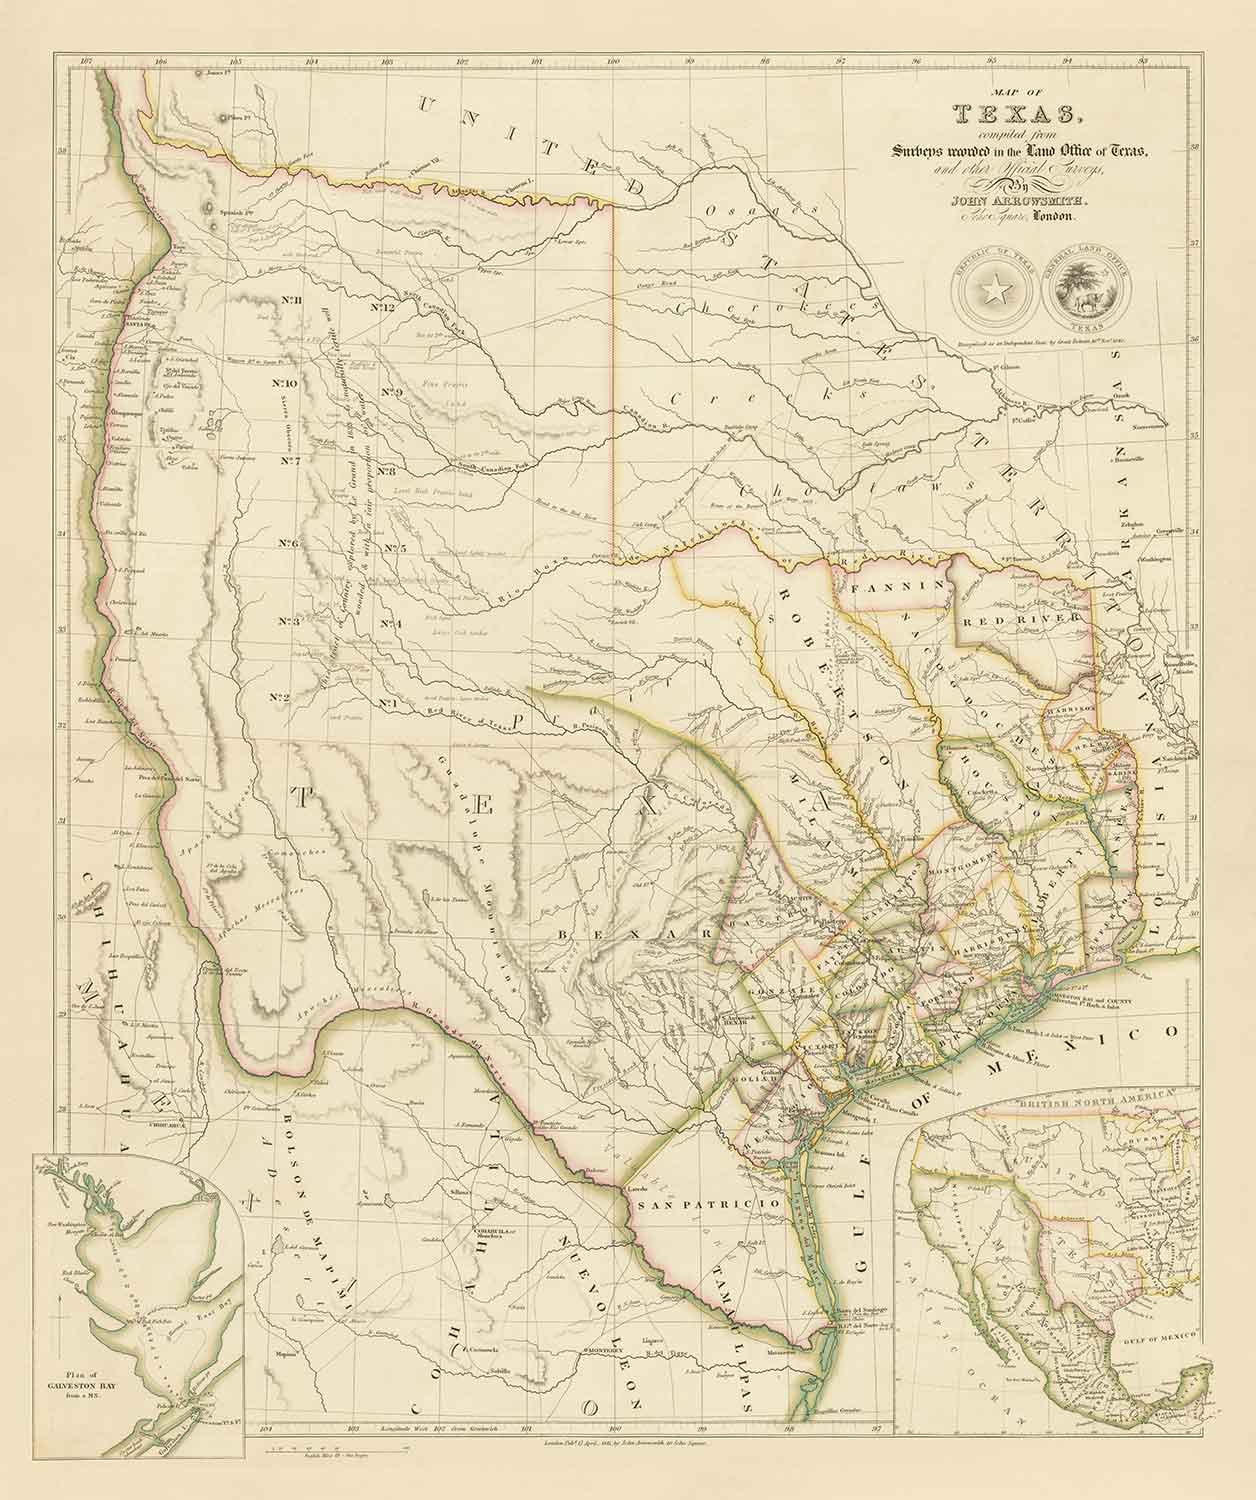 Alte Karte der Republik Texas, 1841 - Unabhängiges Land vor den USA, Houston, San Antonio, Golf von Mexiko